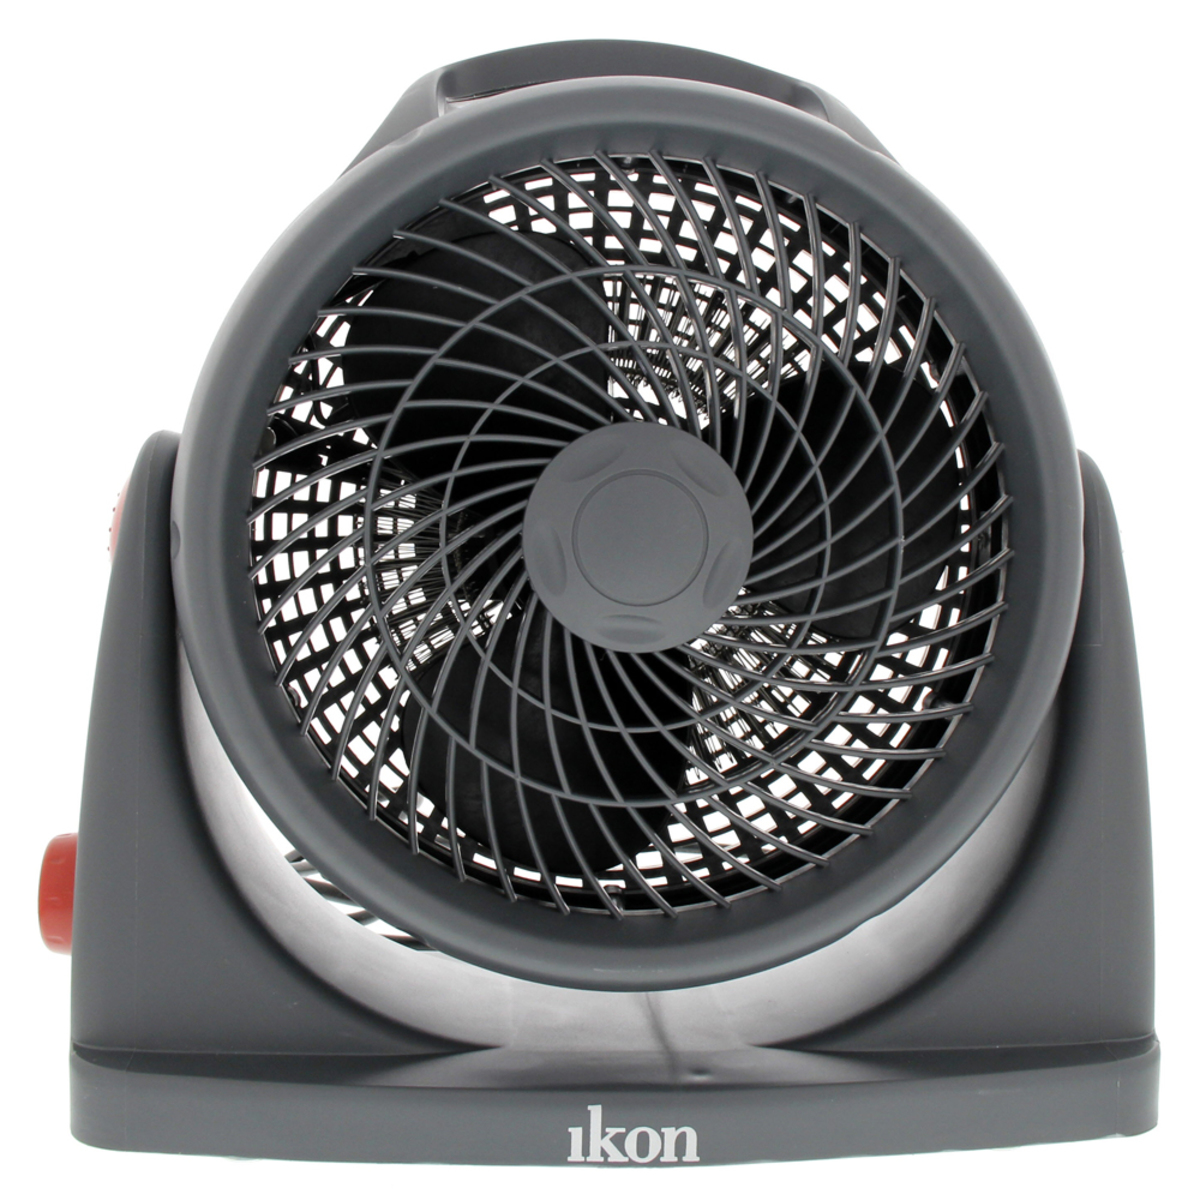 Ikon Turbo Heater Fan IKHFH804 2in1